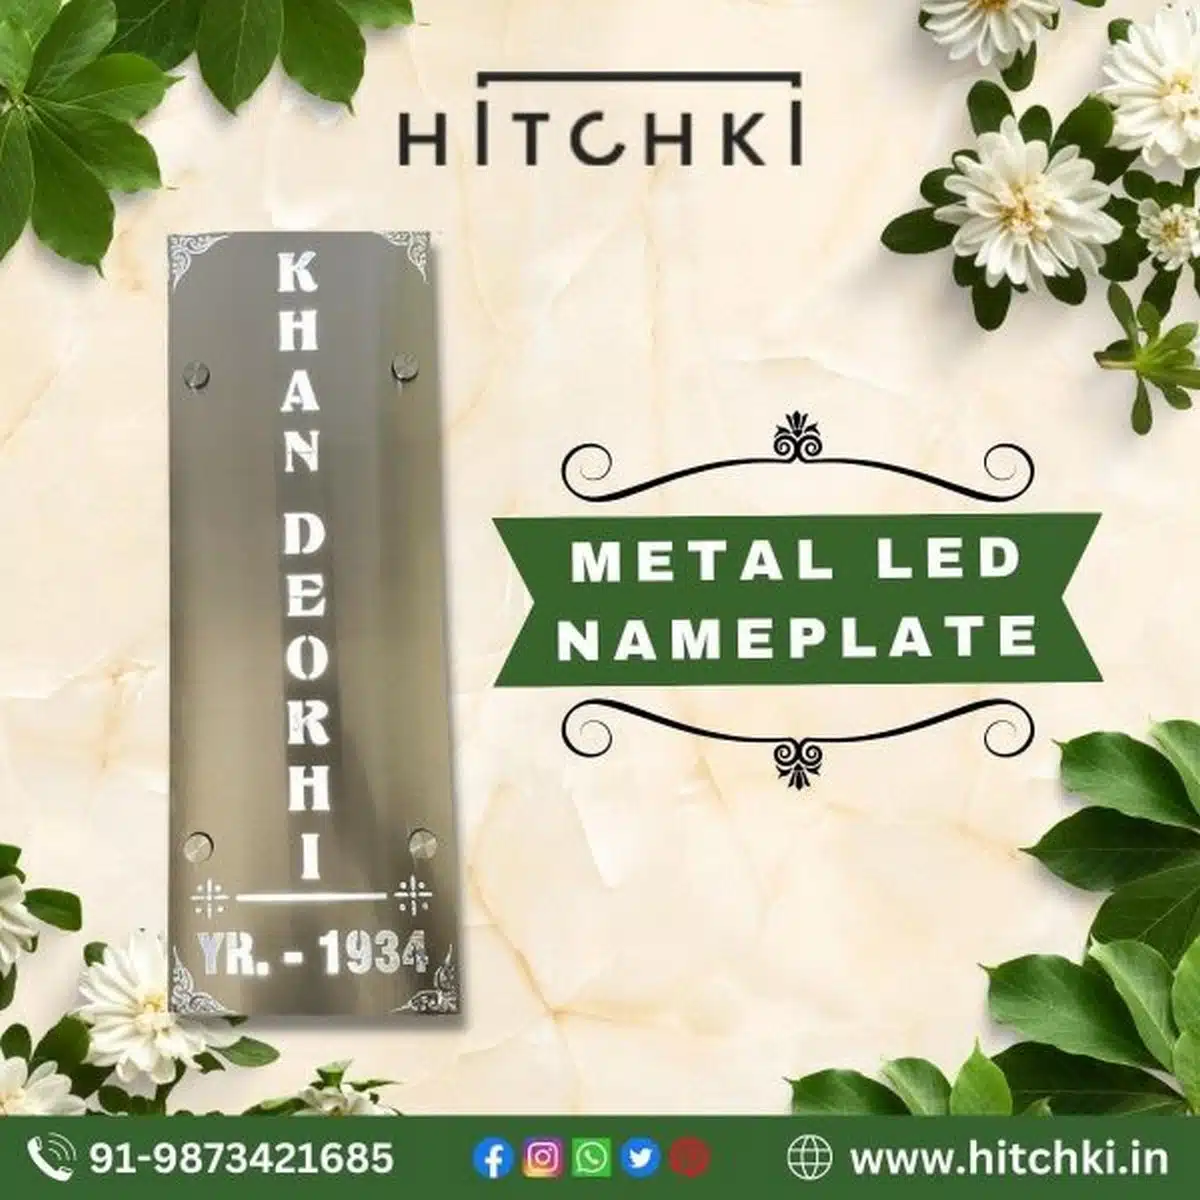 Buy New Metal LED Nameplate Customised Hitchki